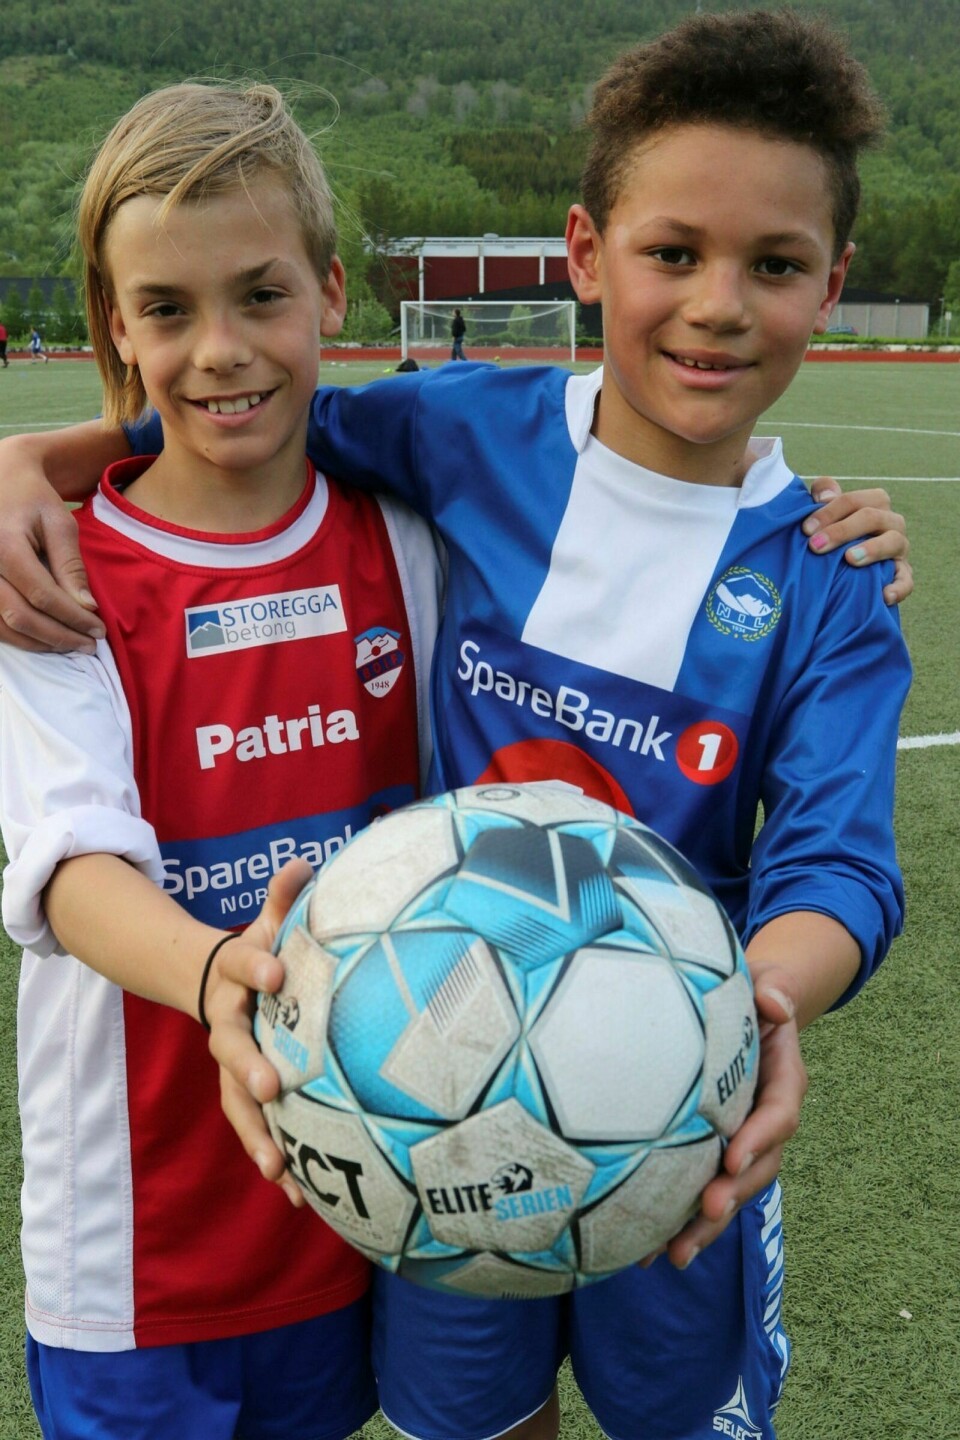 FOTBALLVENNER: NIL-spiller Marco Bansi (10) og BOIF-spiller Martin Nordbakken Presthaug (12) var gode fotballkompiser etter kampslutt. Foto: Ivar Løvland